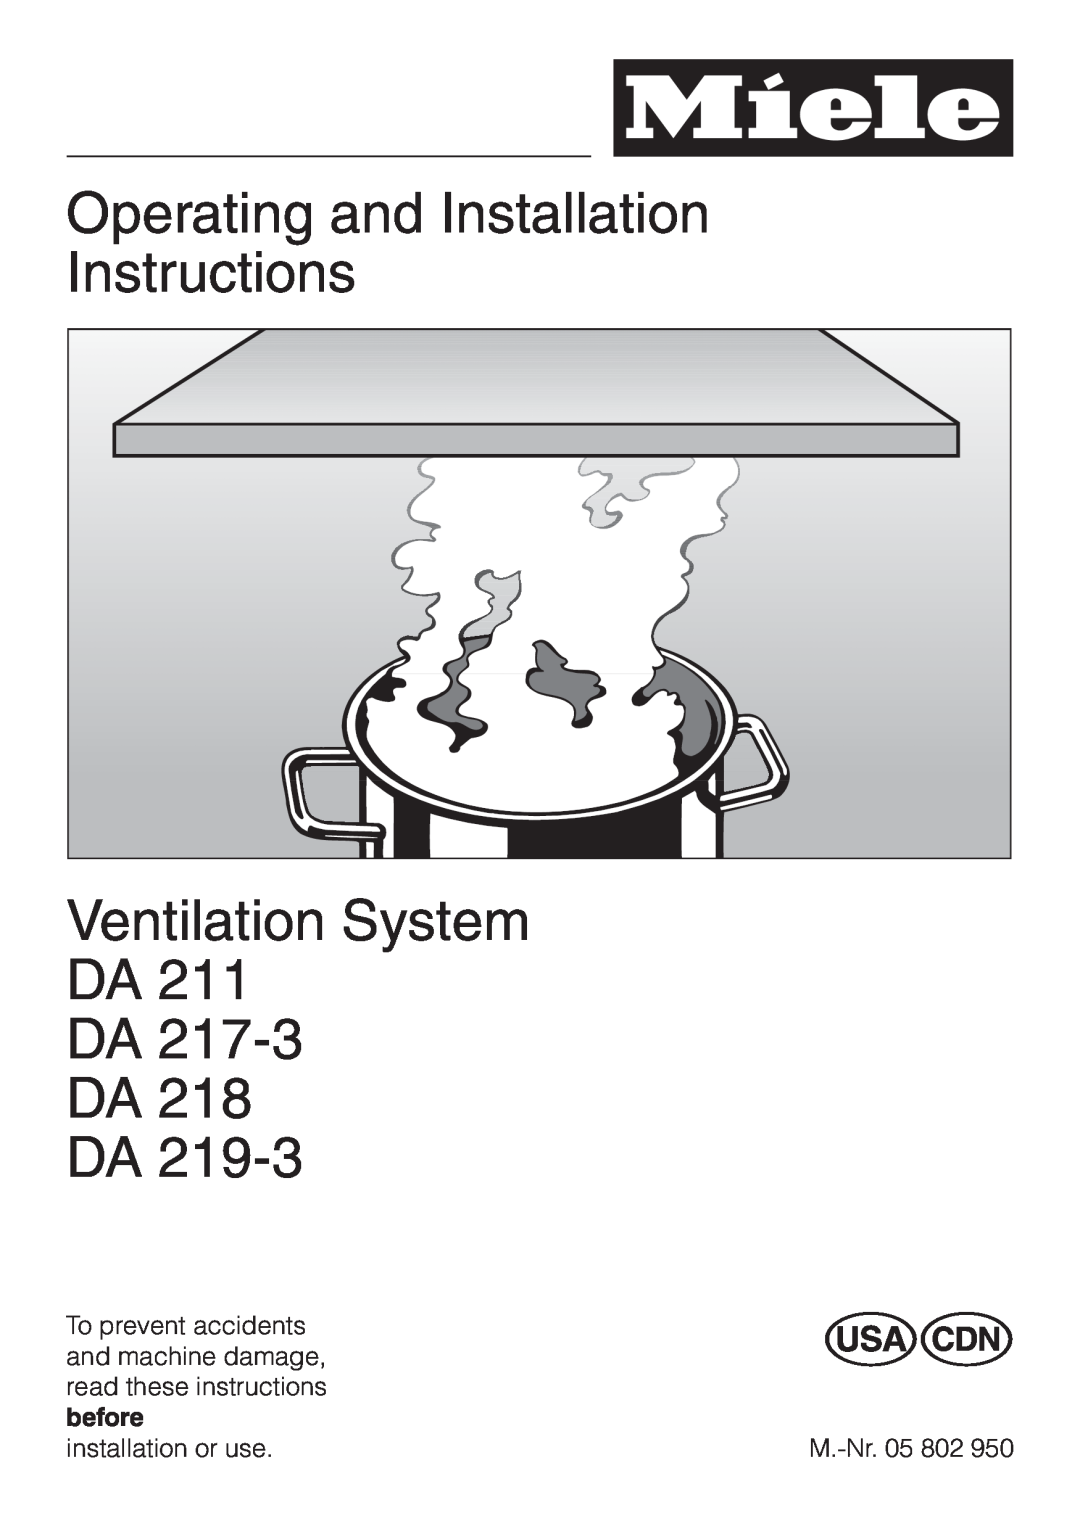 Miele DA 219-3, DA217-3 installation instructions Operating and Installation Instructions, Ventilation System DA DA DA DA 